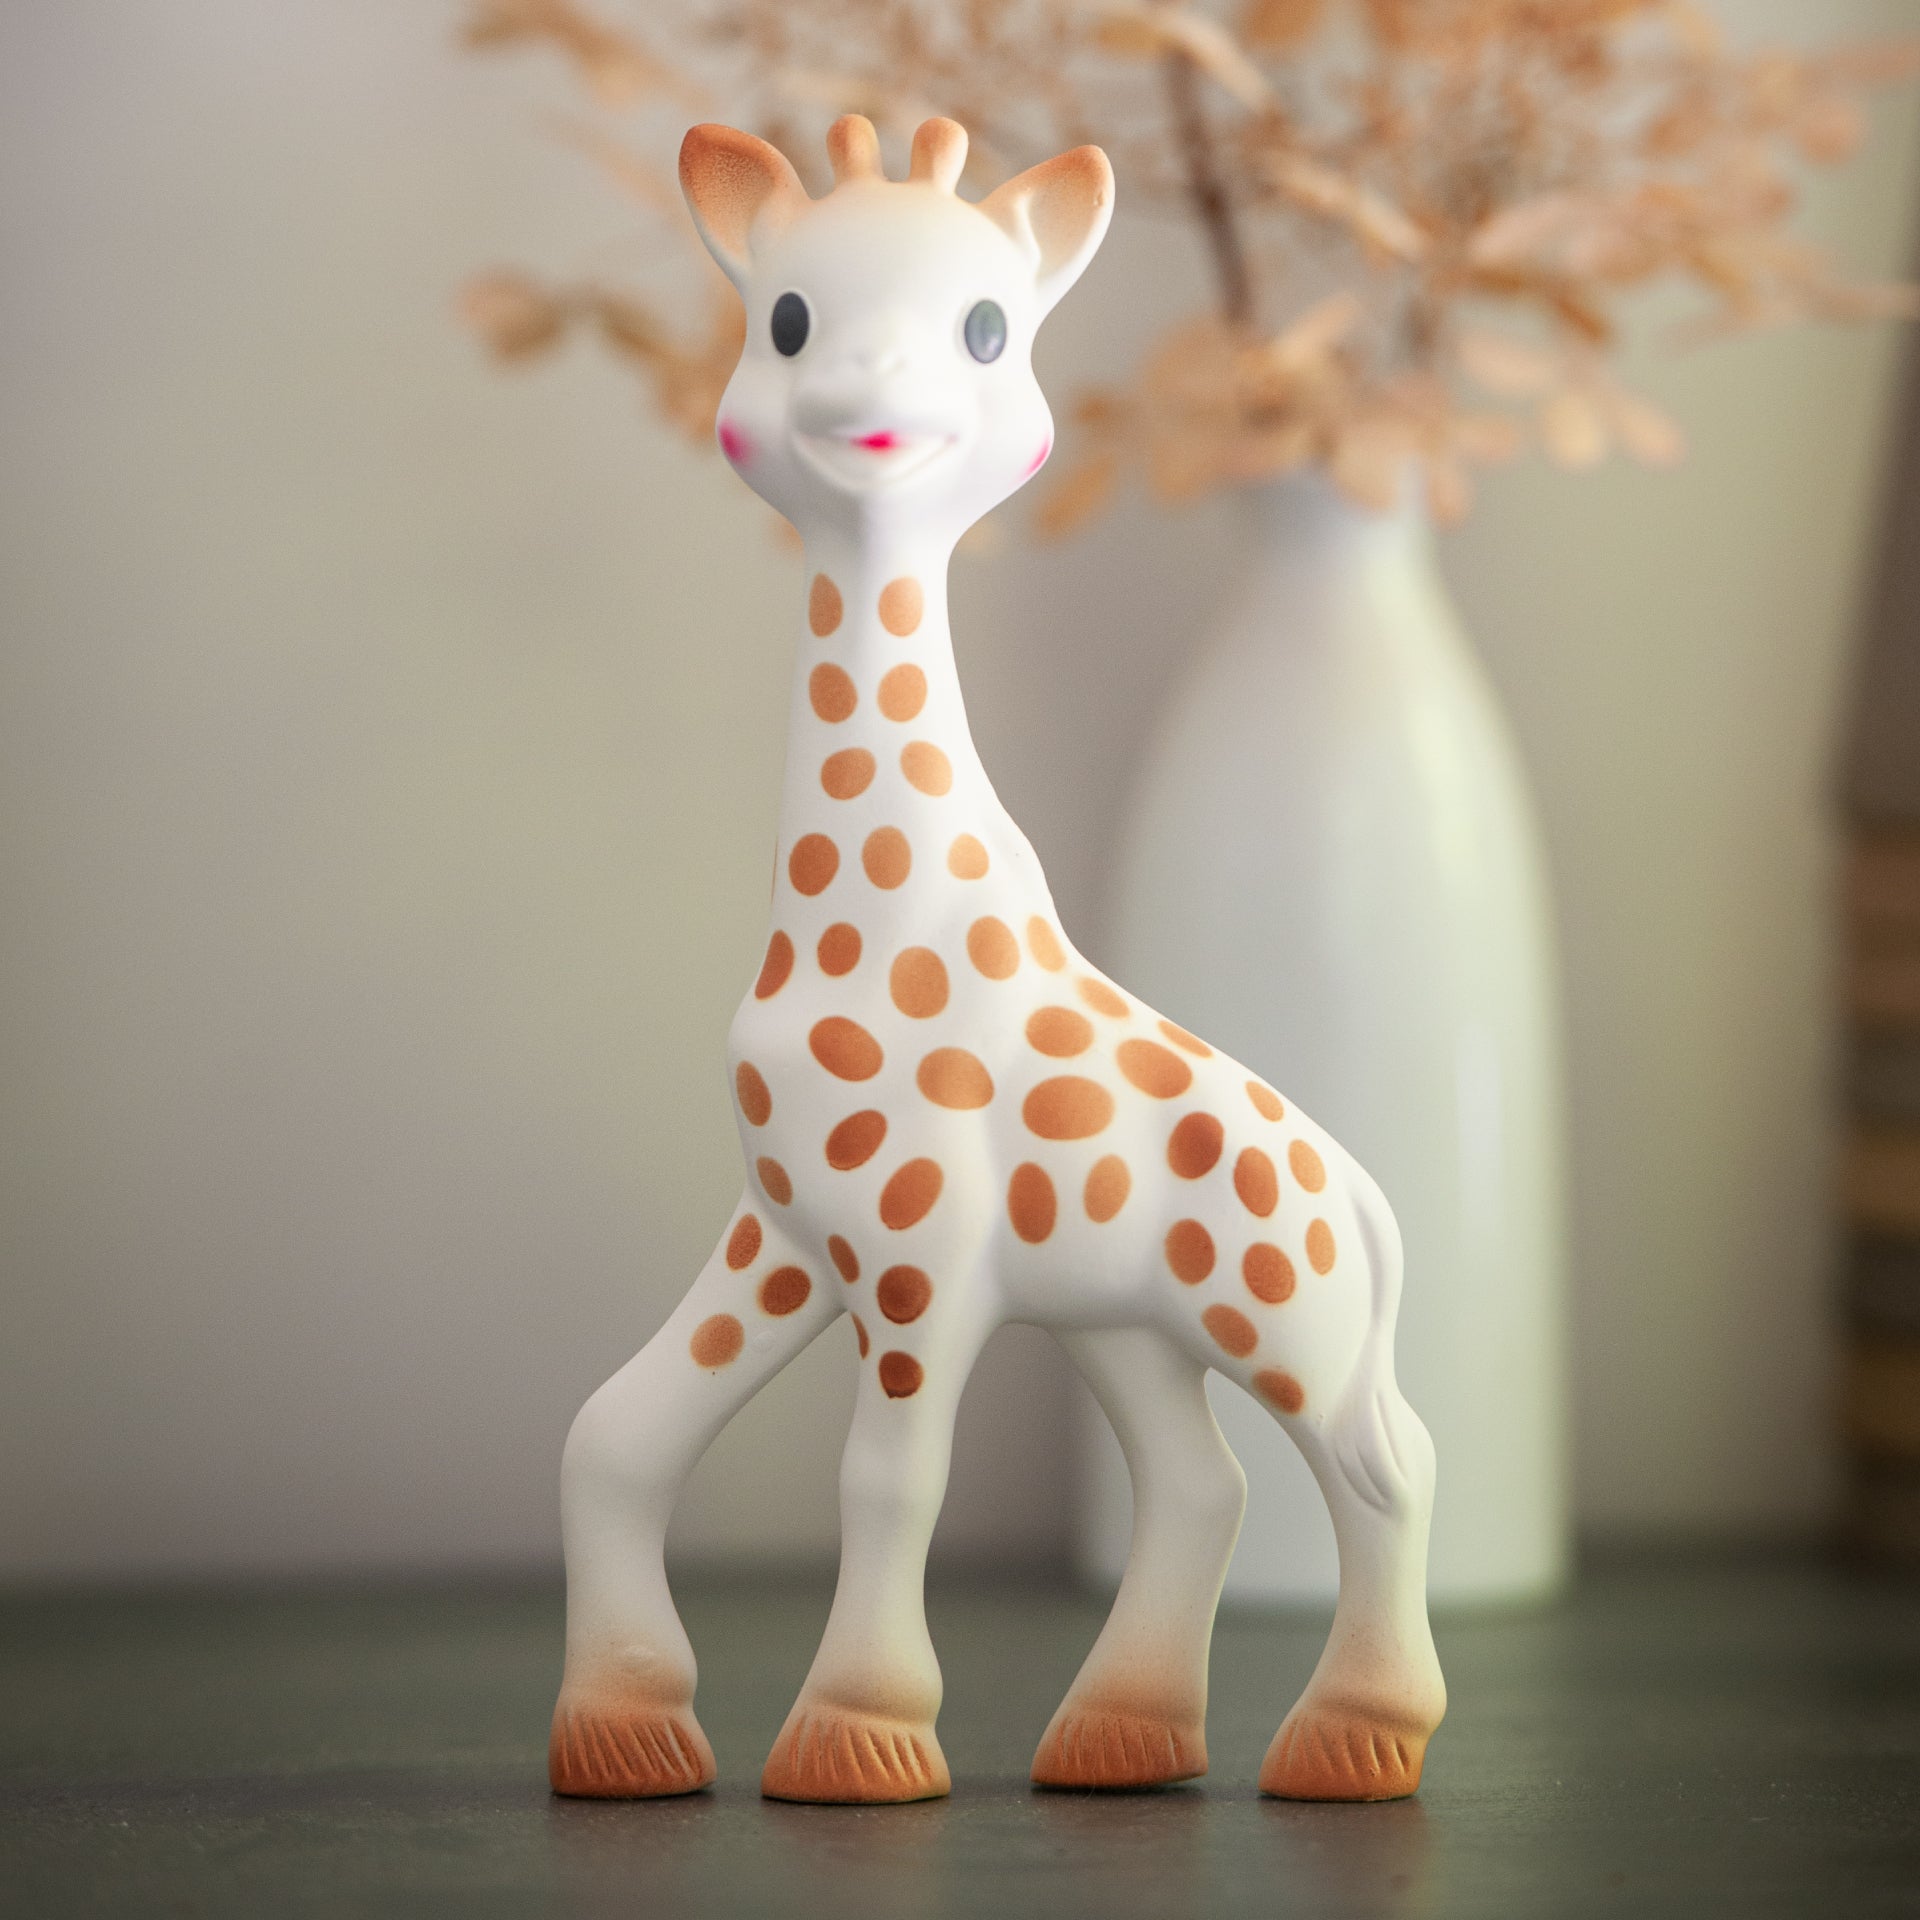 キリンのソフィー – Sophie la girafe